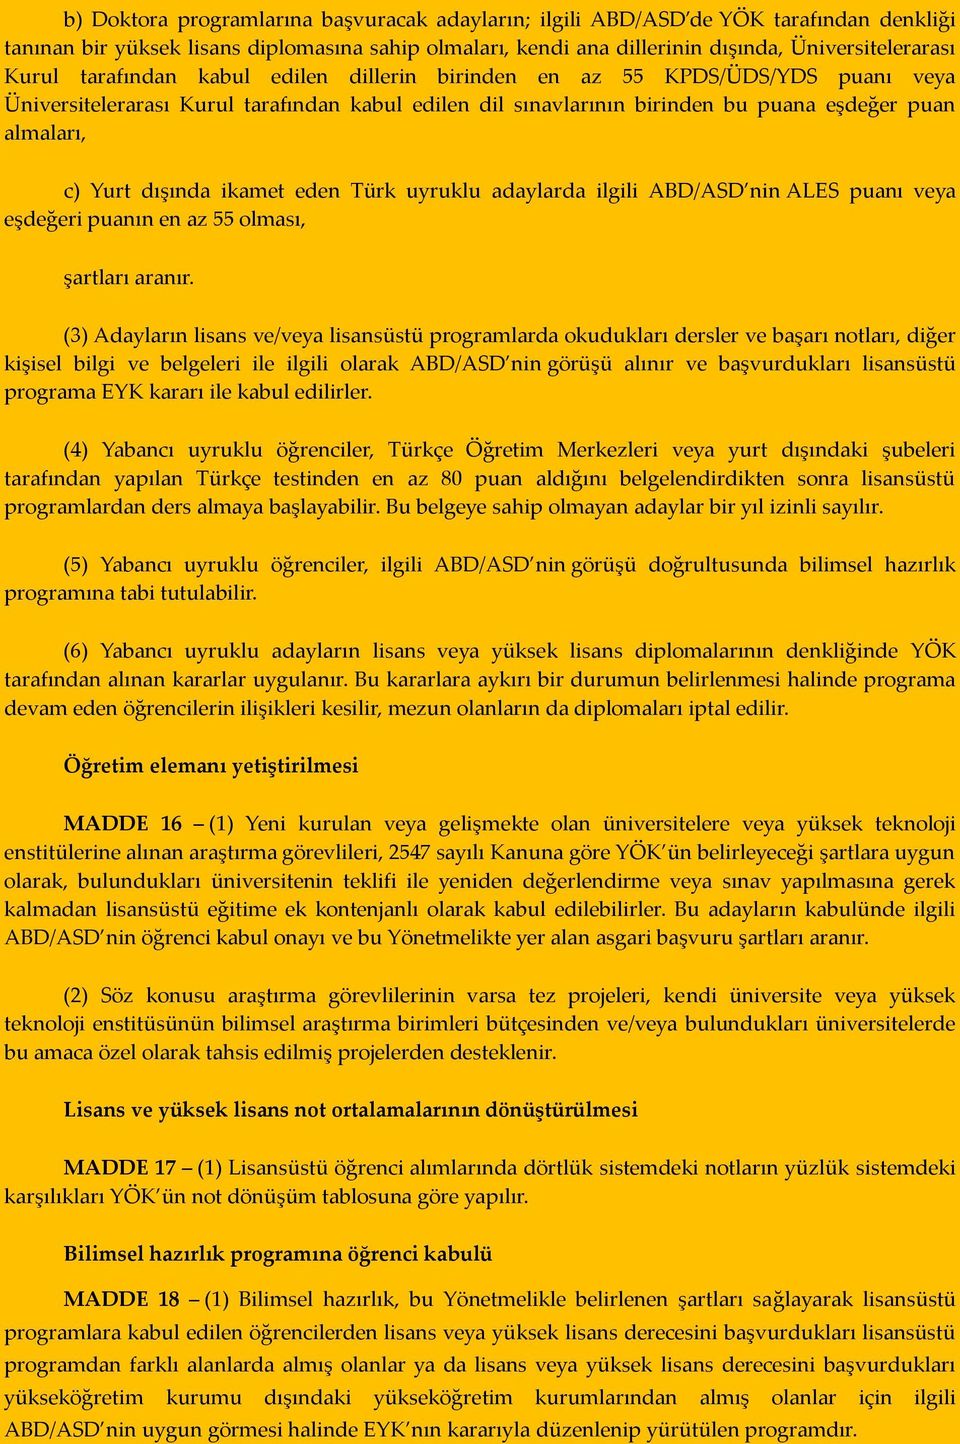 ikamet eden Türk uyruklu adaylarda ilgili ABD/ASD nin ALES puanı veya eşdeğeri puanın en az 55 olması, şartları aranır.